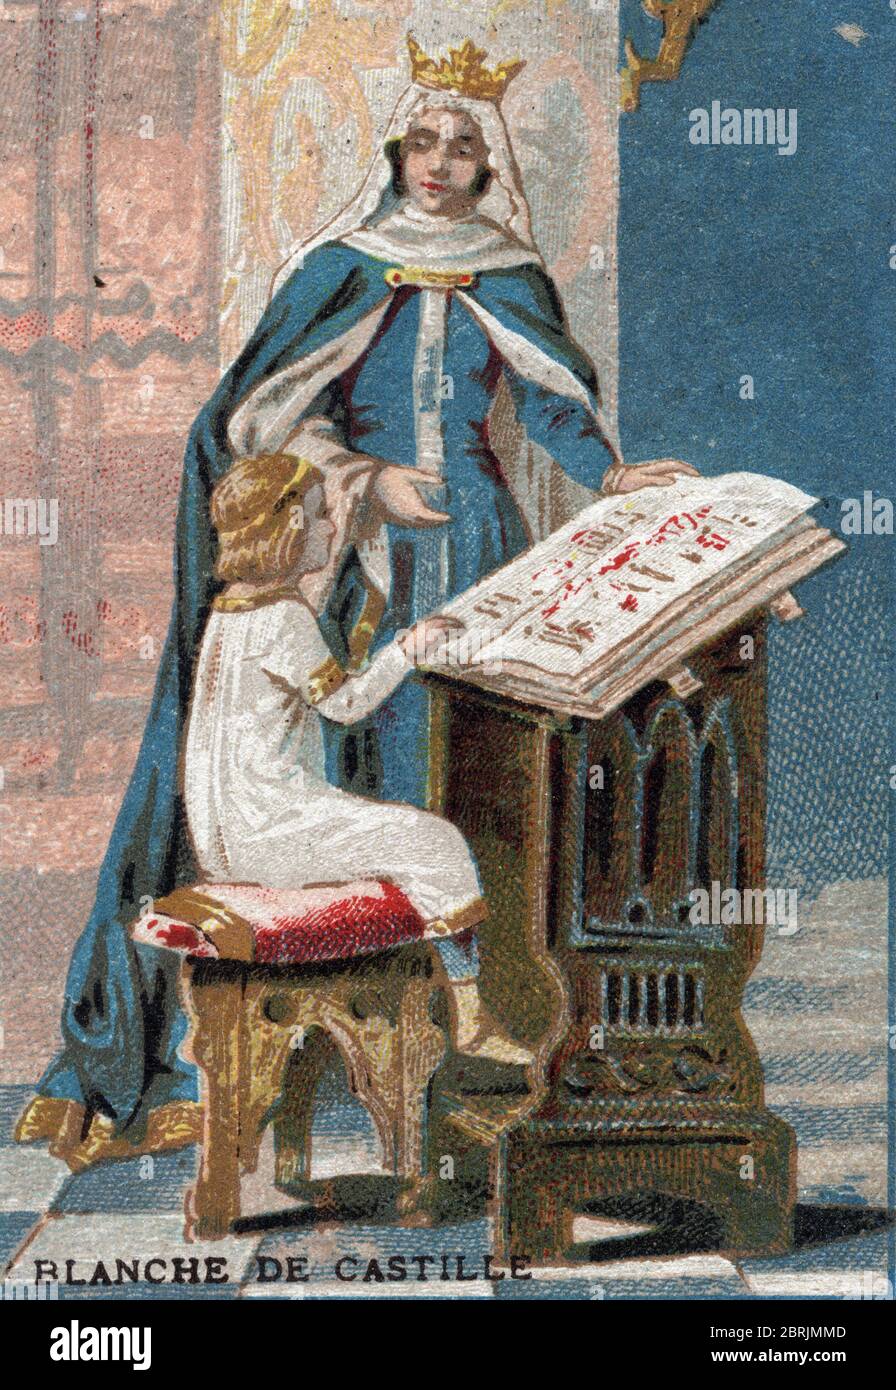 'La reine Blanche de Castille donne une lecon au futur roi Louis IX (saint Louis) (1214-1270) enfant' (Saint Louis (Louis IX) being taught by His Moth Stock Photo